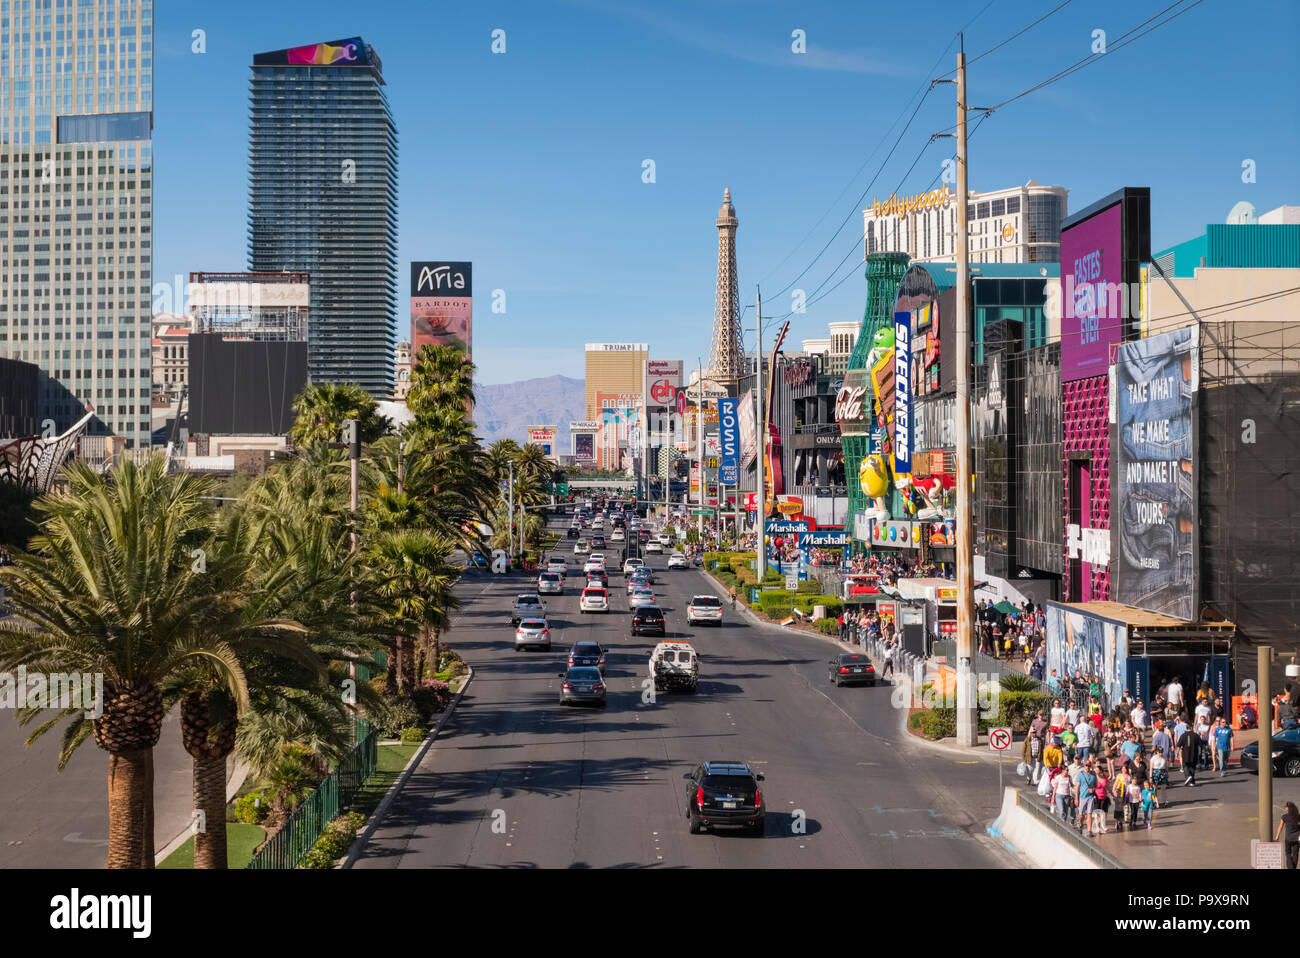 The Las Vegas Strip skyline, Las Vegas, Nevada, USA Stock Photo